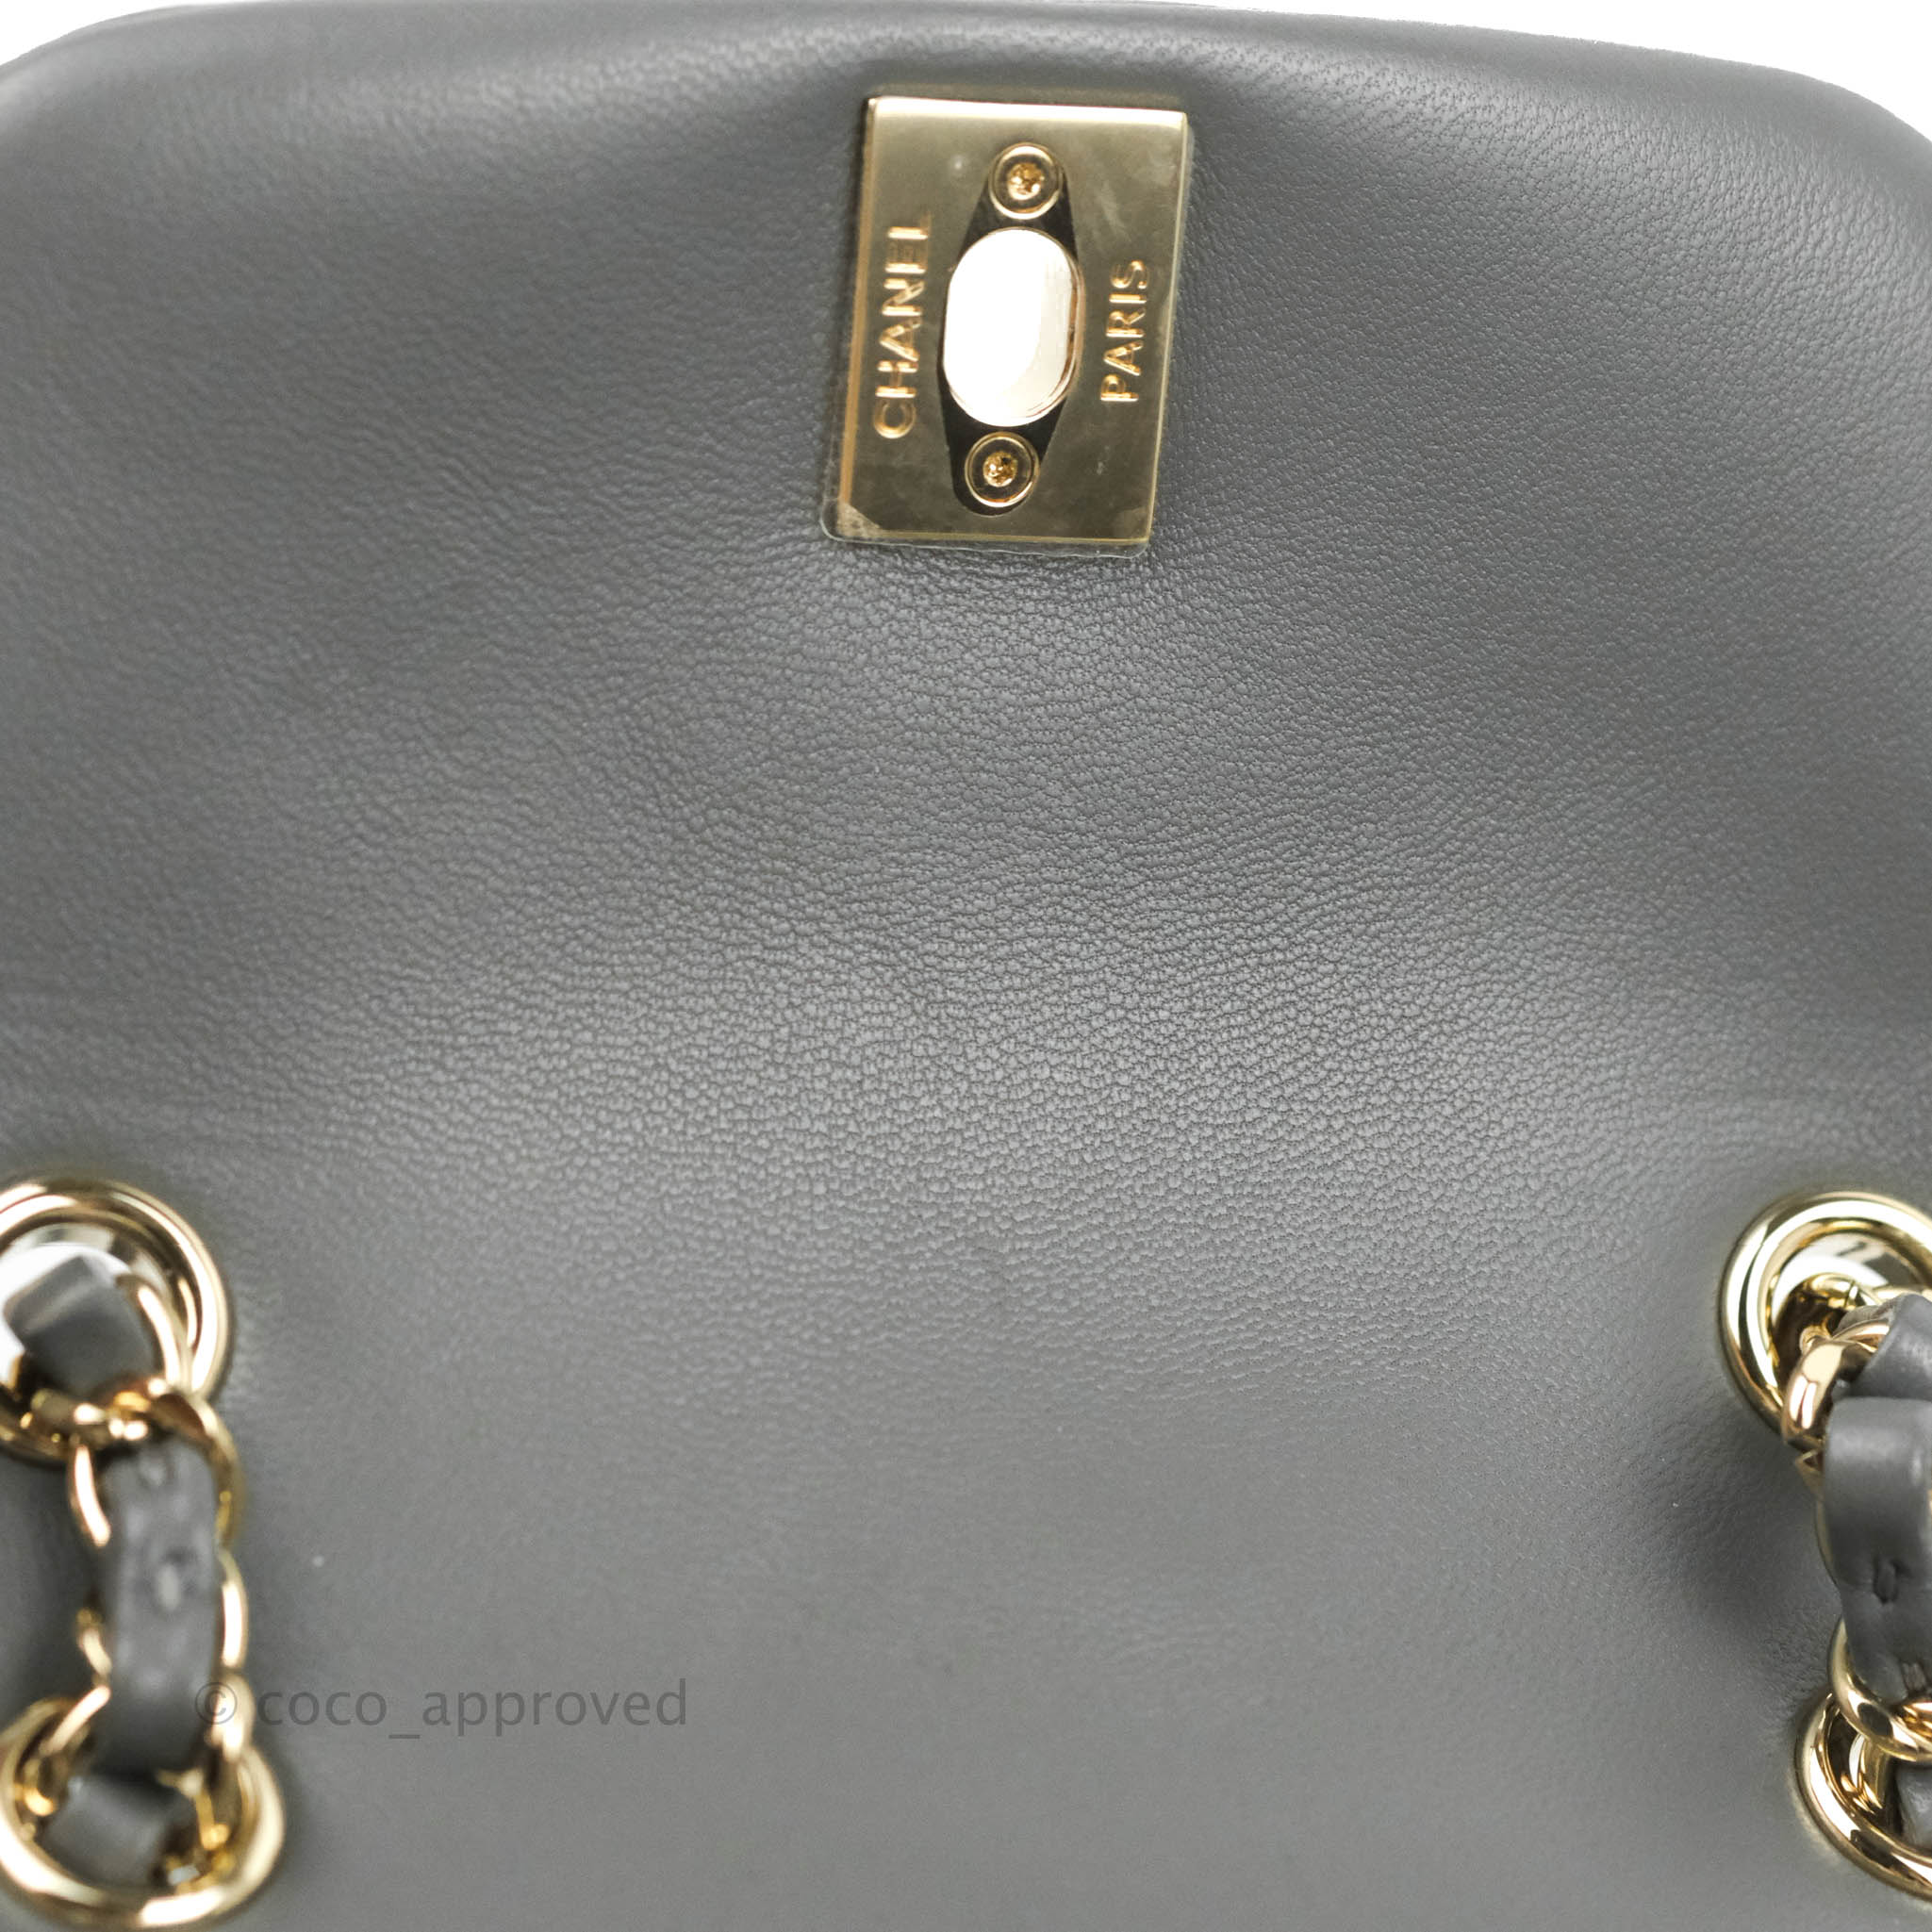 CHANEL CC N°5 Bag Charm Light Gold 105024